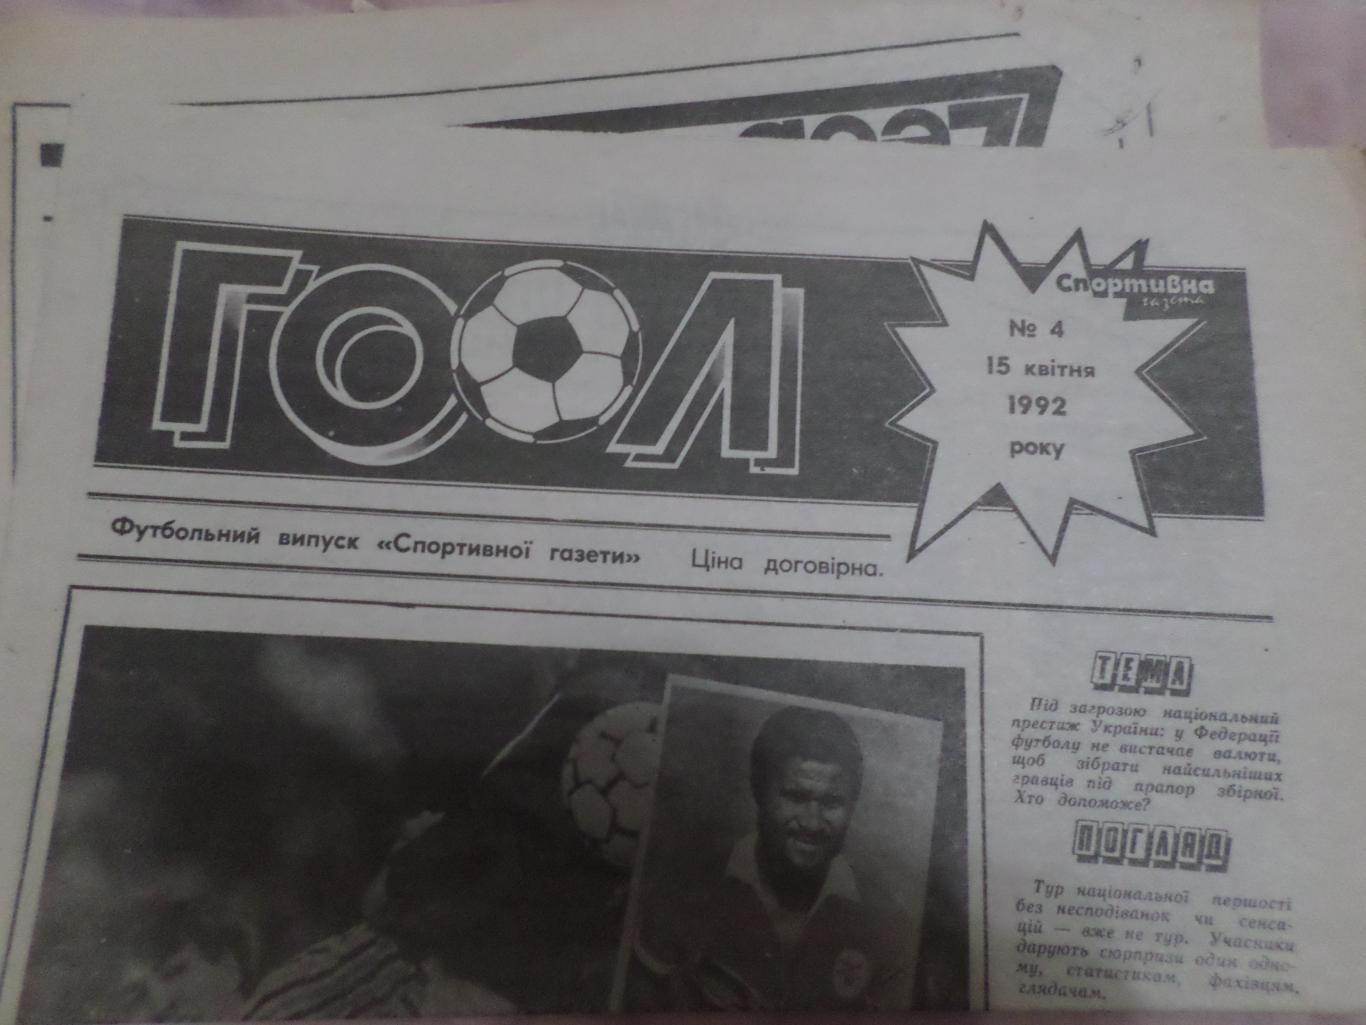 газета Гоол ( футбольный выпуск Спортивной газеты) № 4 15 апреля 1992 г